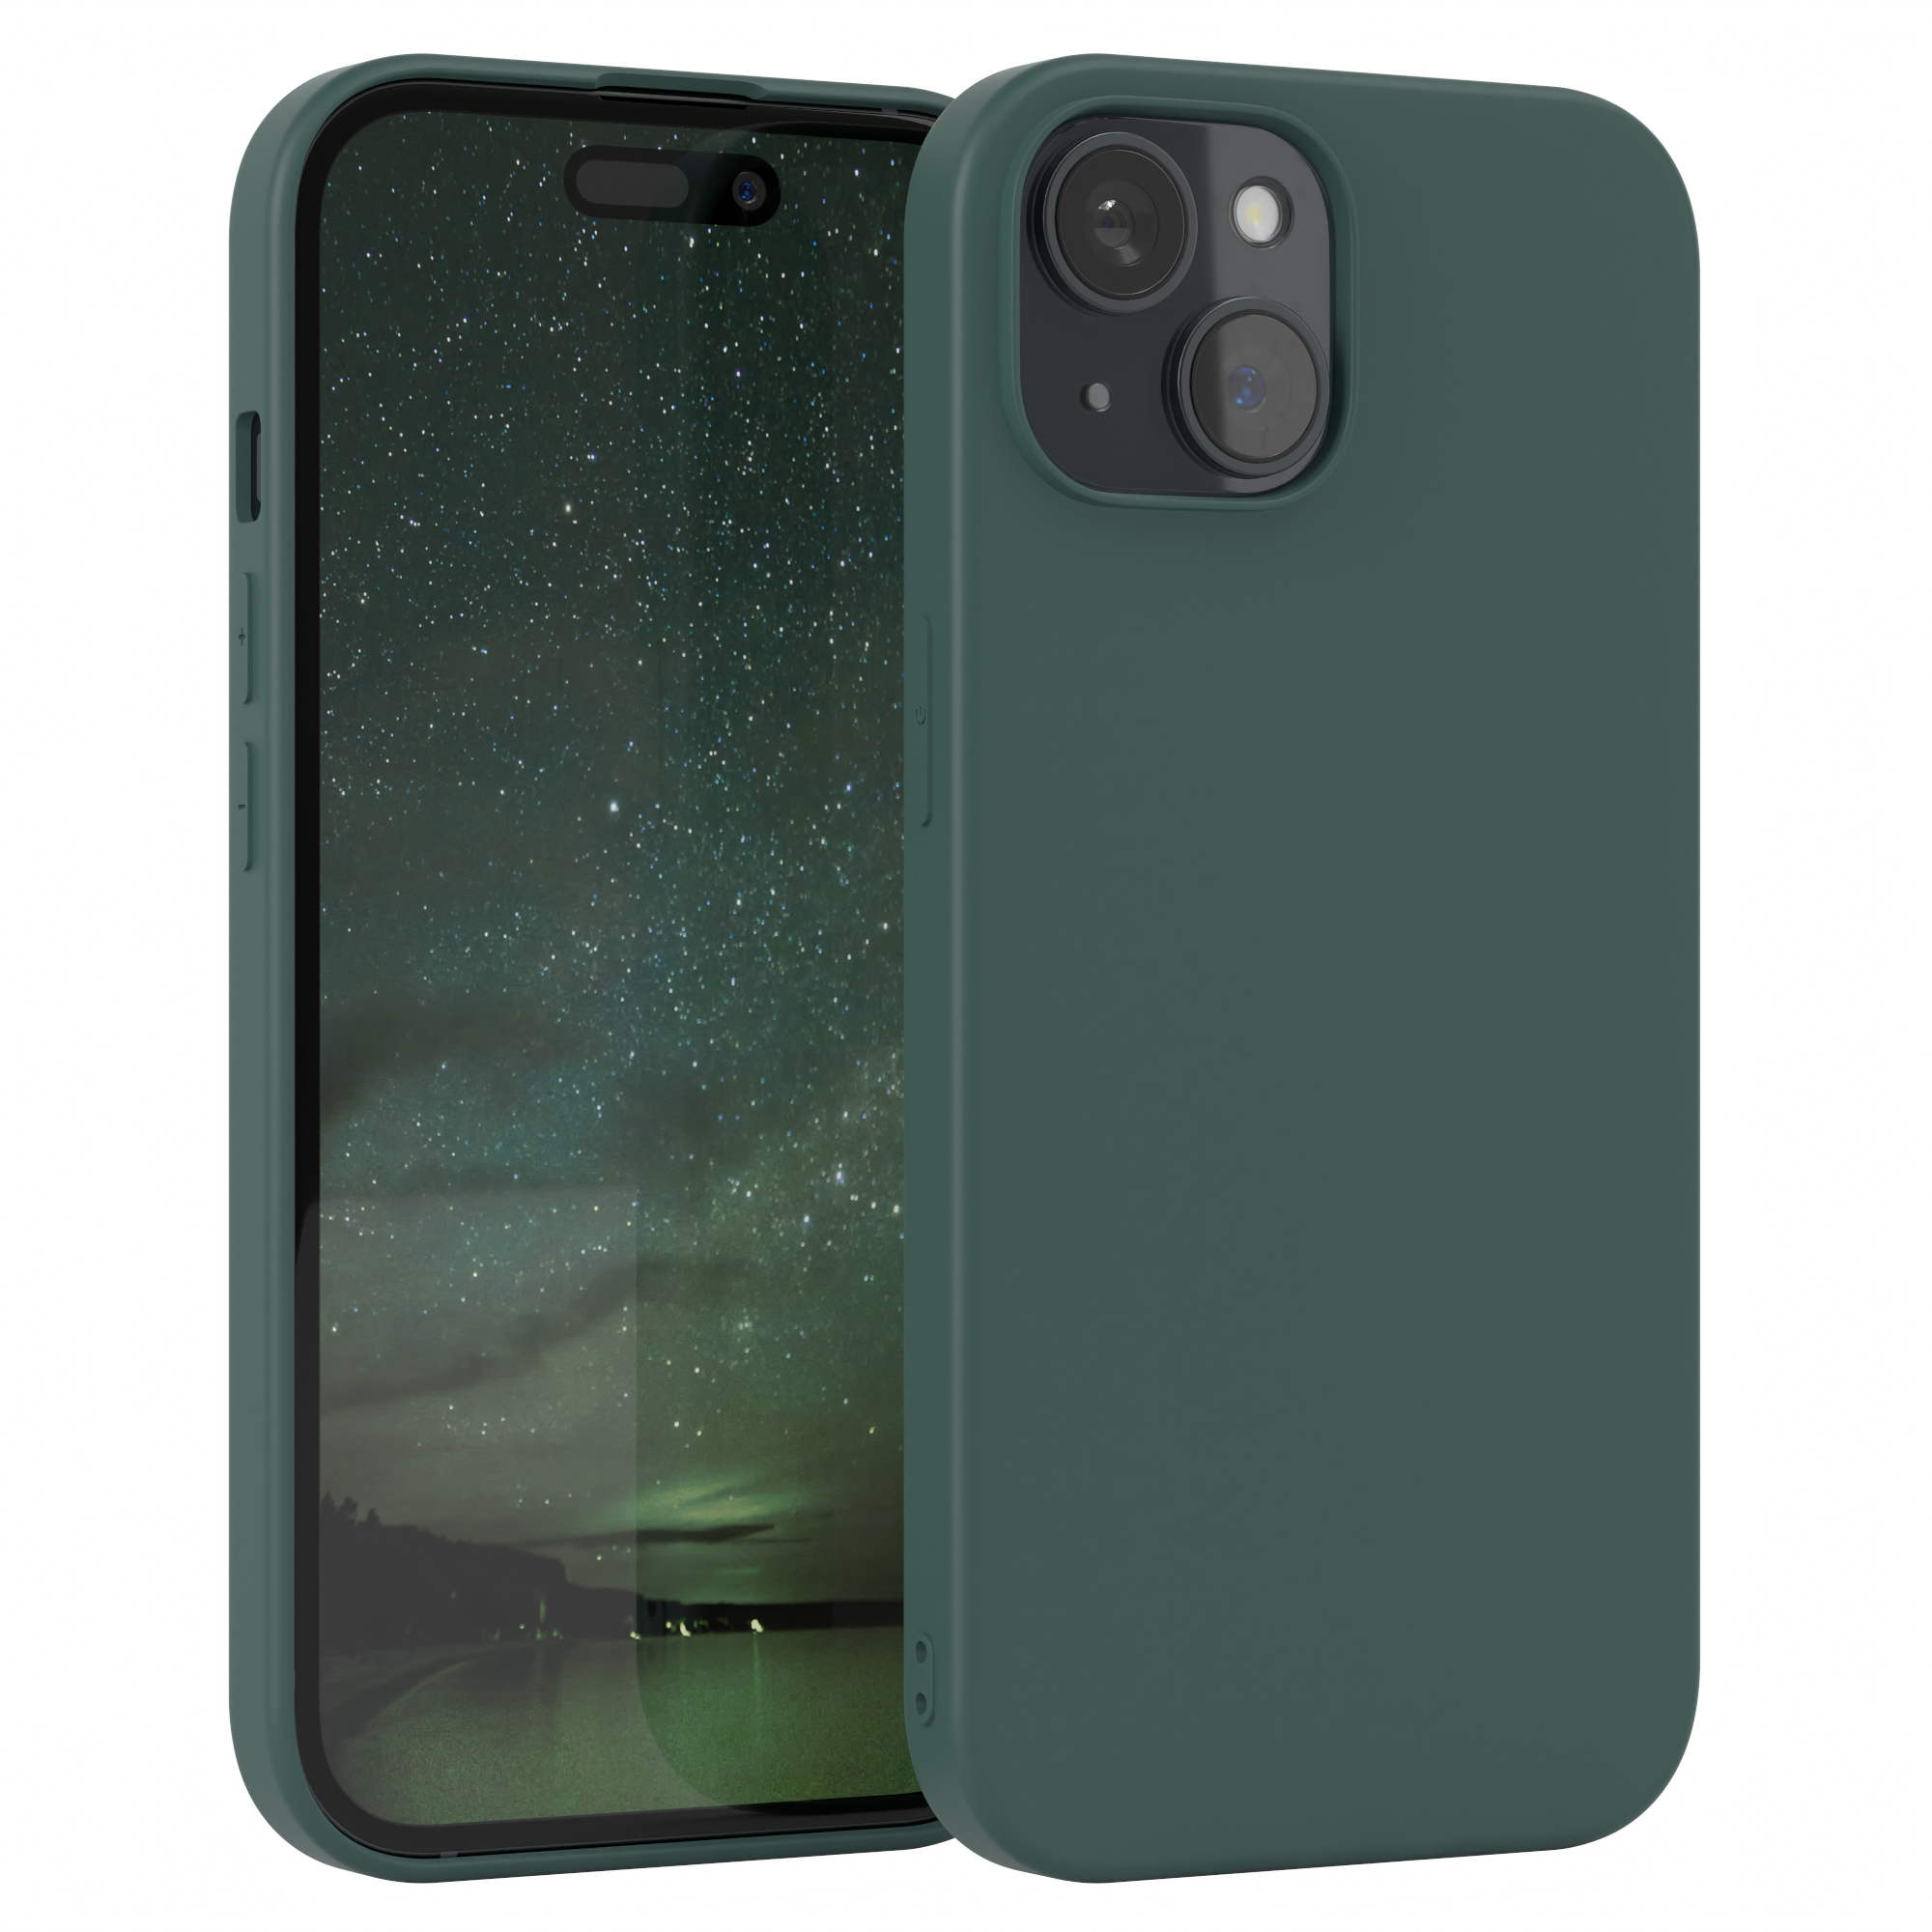 Grün CASE TPU / iPhone EAZY Matt, Handycase Nachtgrün 15, Apple, Silikon Backcover,